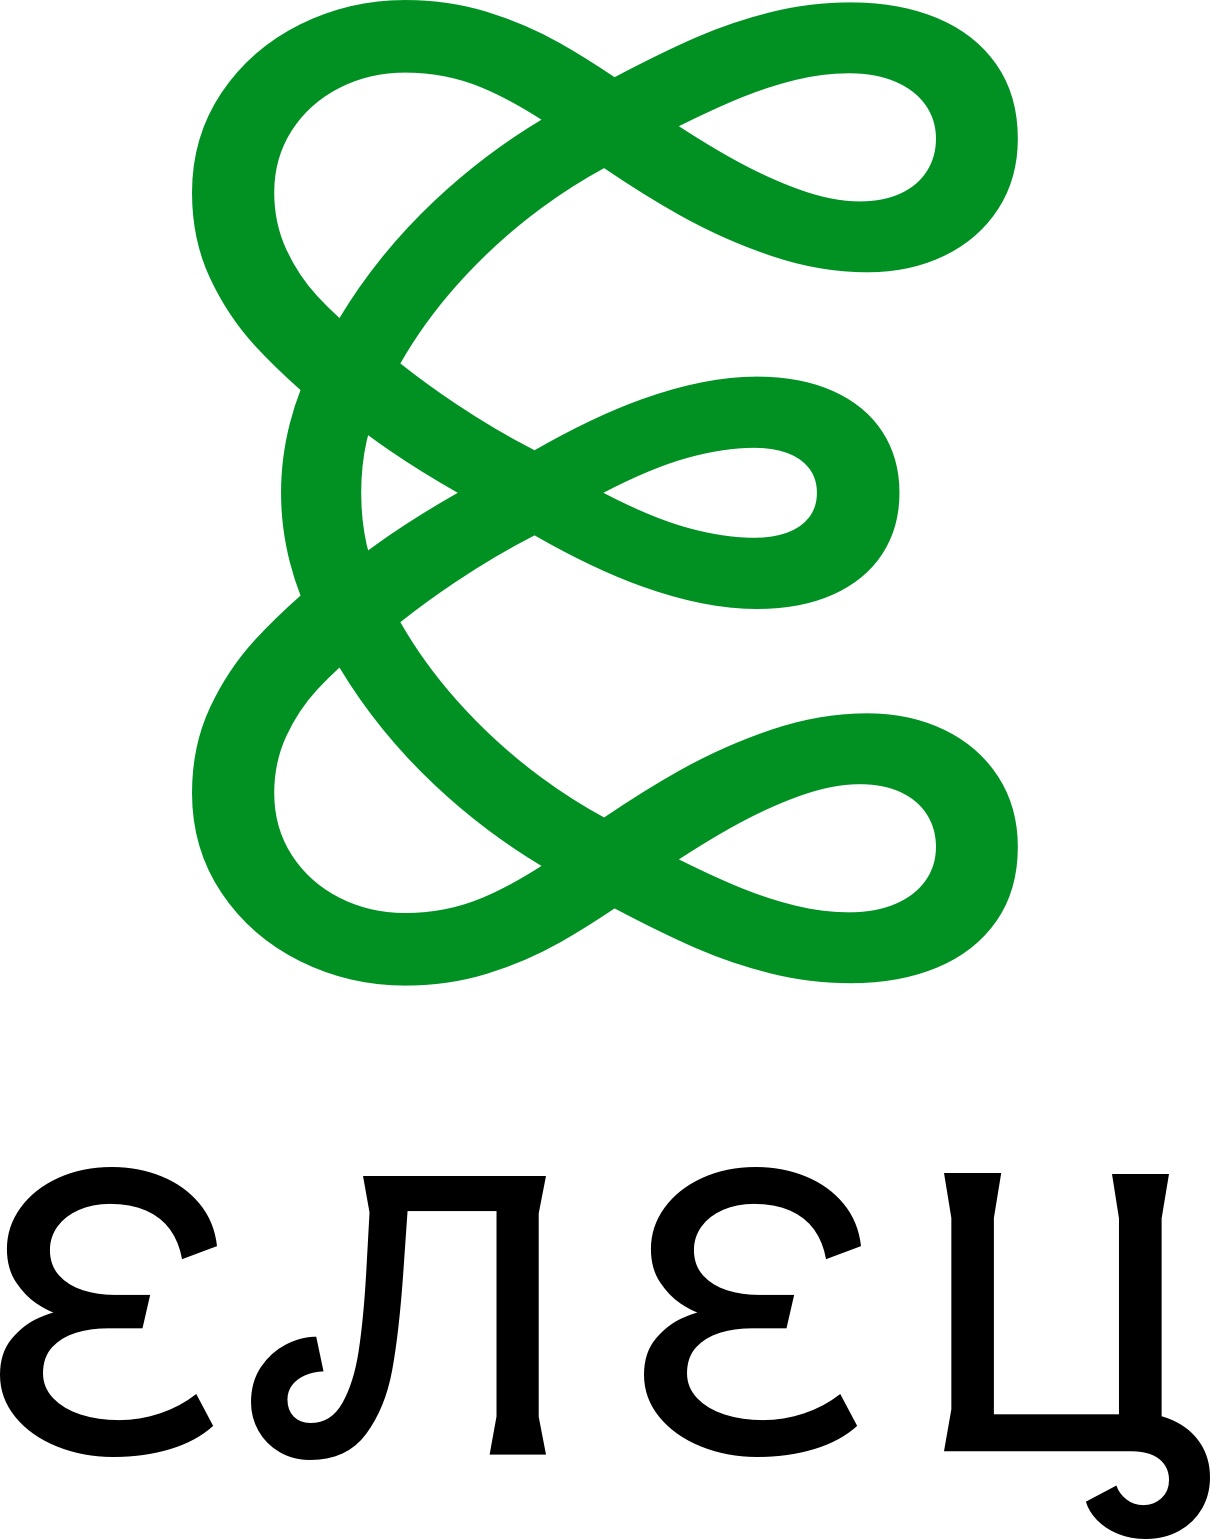 yelets logo_